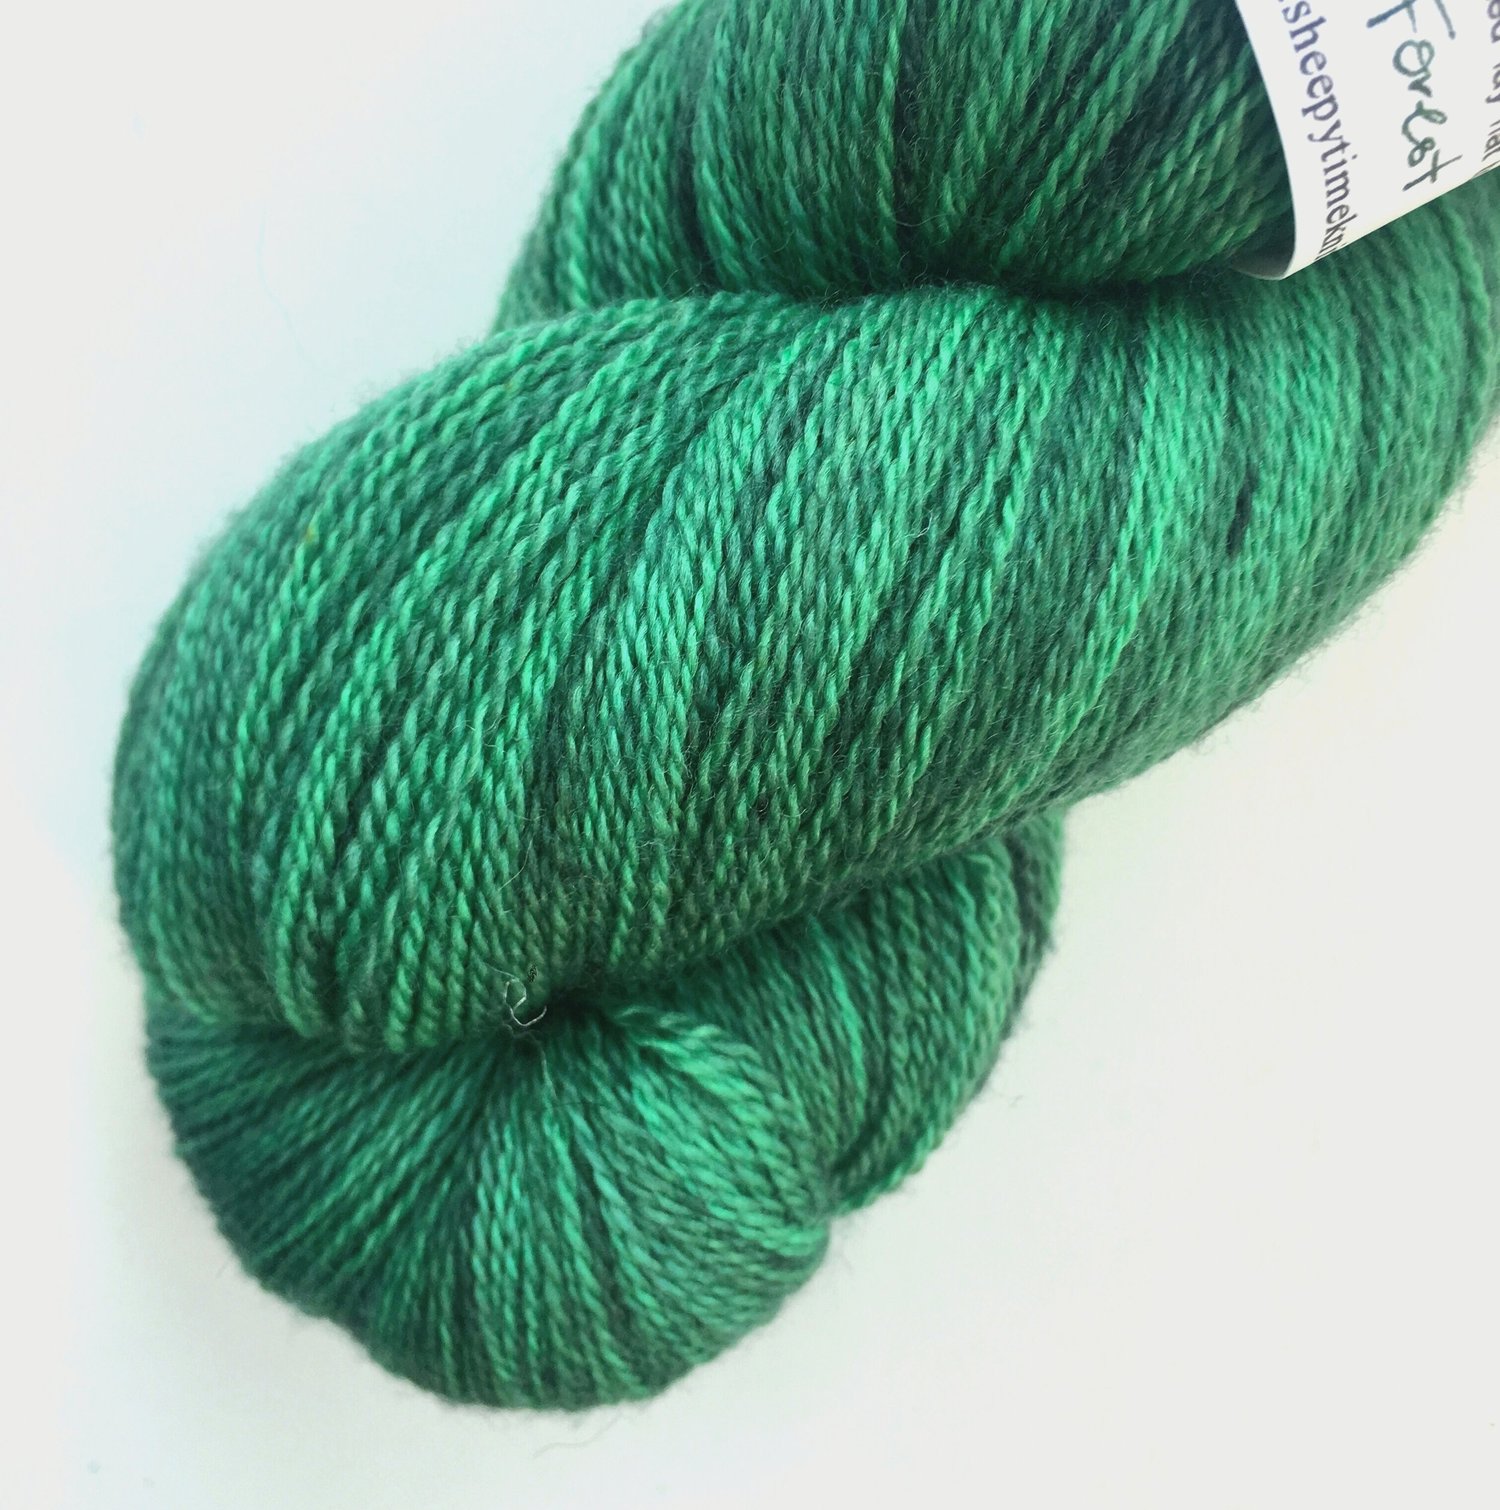 Hemlock Bluffs: Forest Green Hand-dyed Merino Wool Superwash 